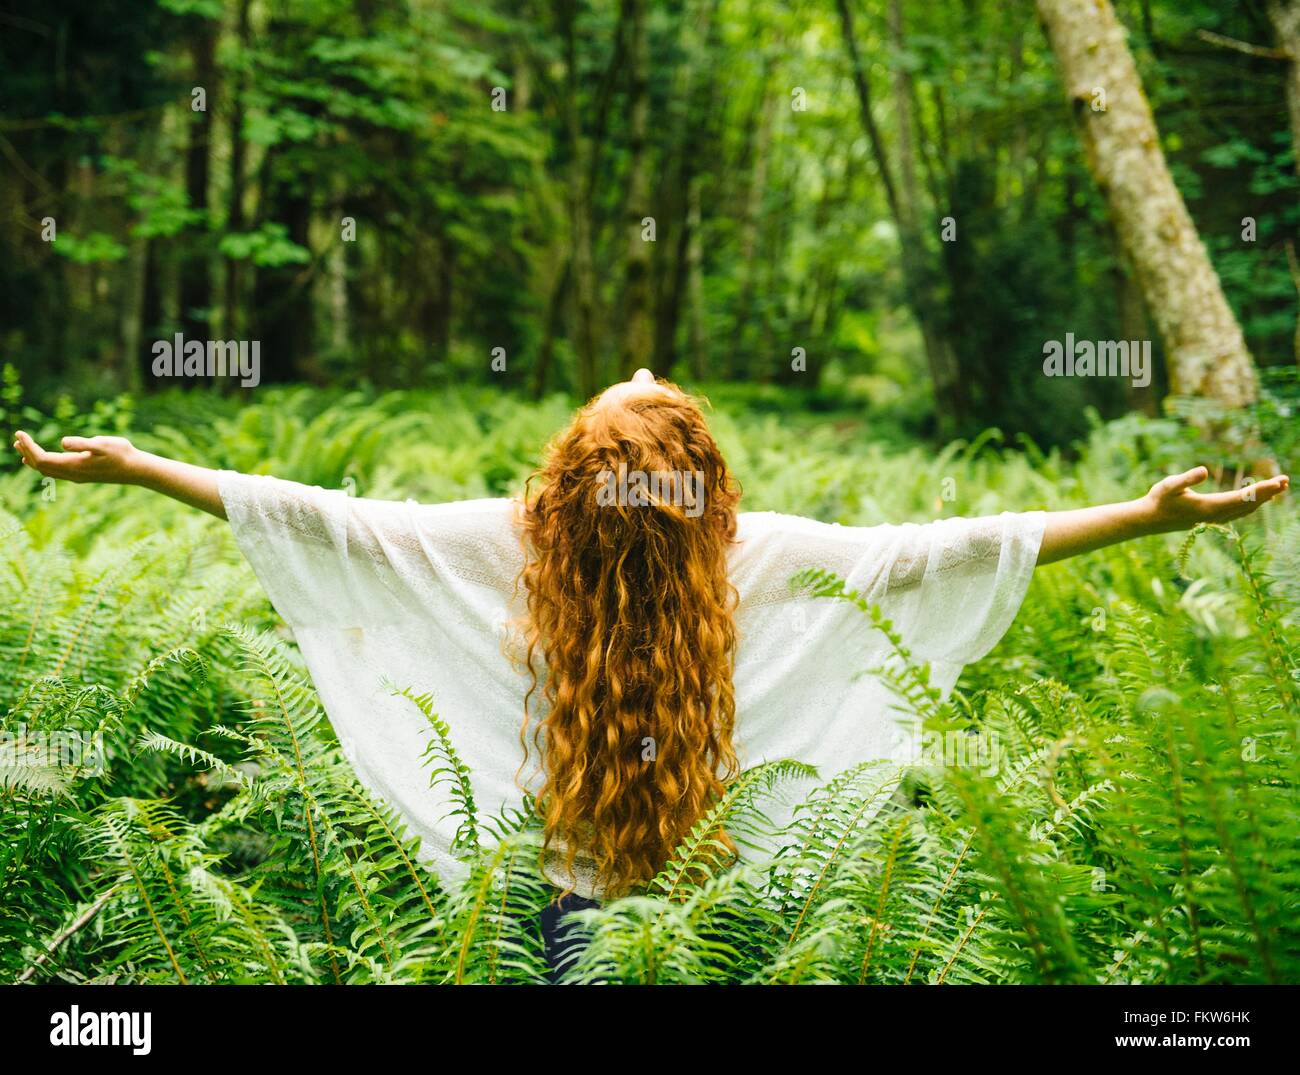 Vue arrière du jeune femme avec de longs cheveux roux avec les bras ouverts entre forêt de fougères Banque D'Images